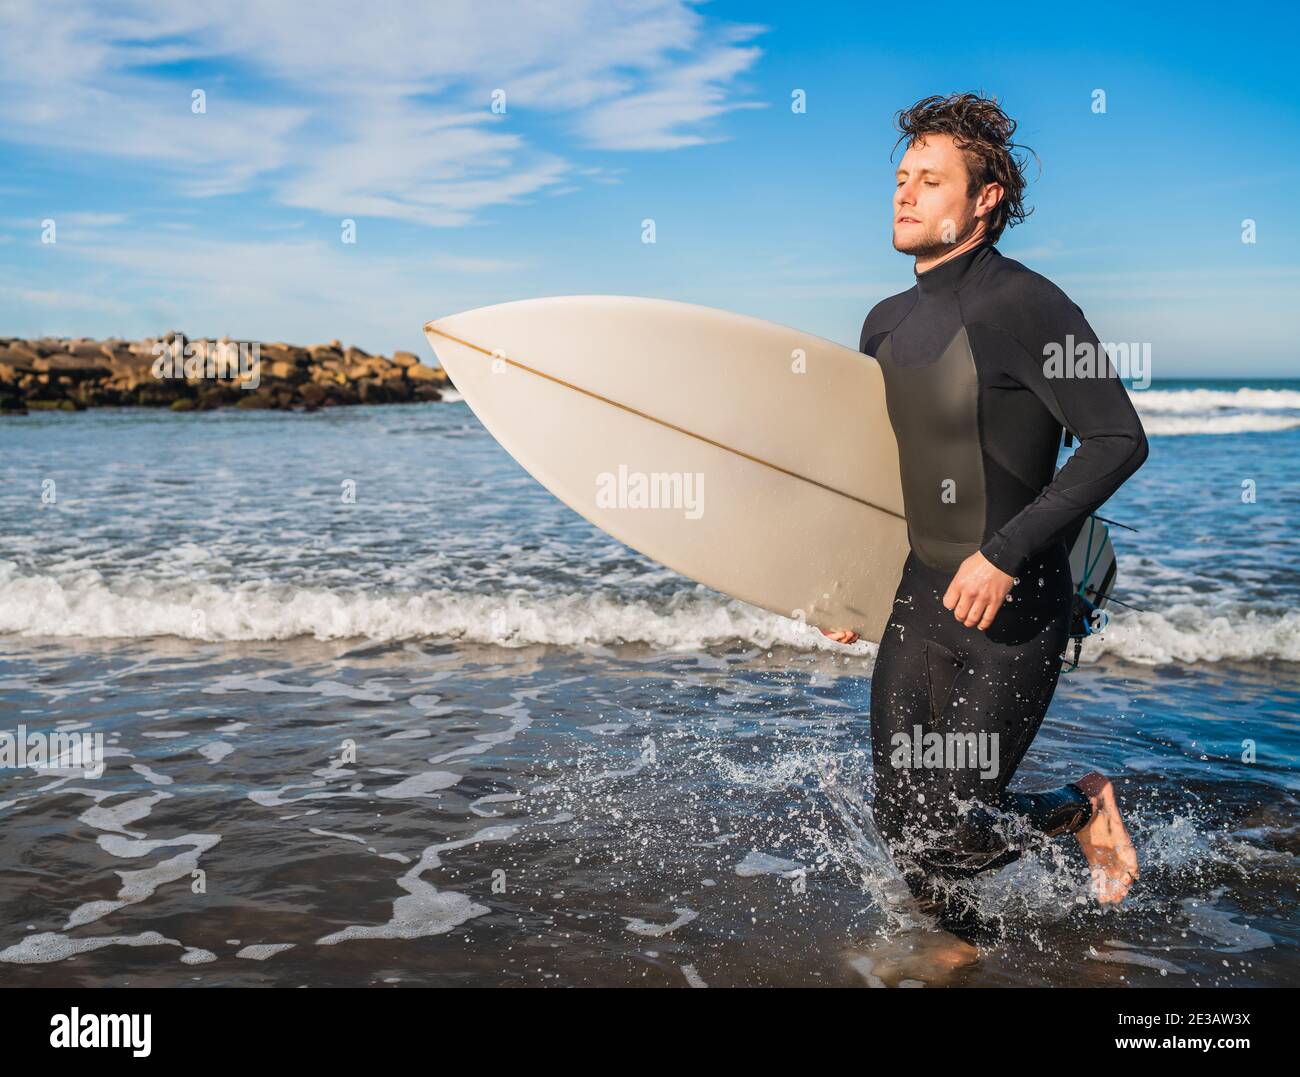 Surfeur laissant l'eau avec planche de surf sous son bras. Banque D'Images